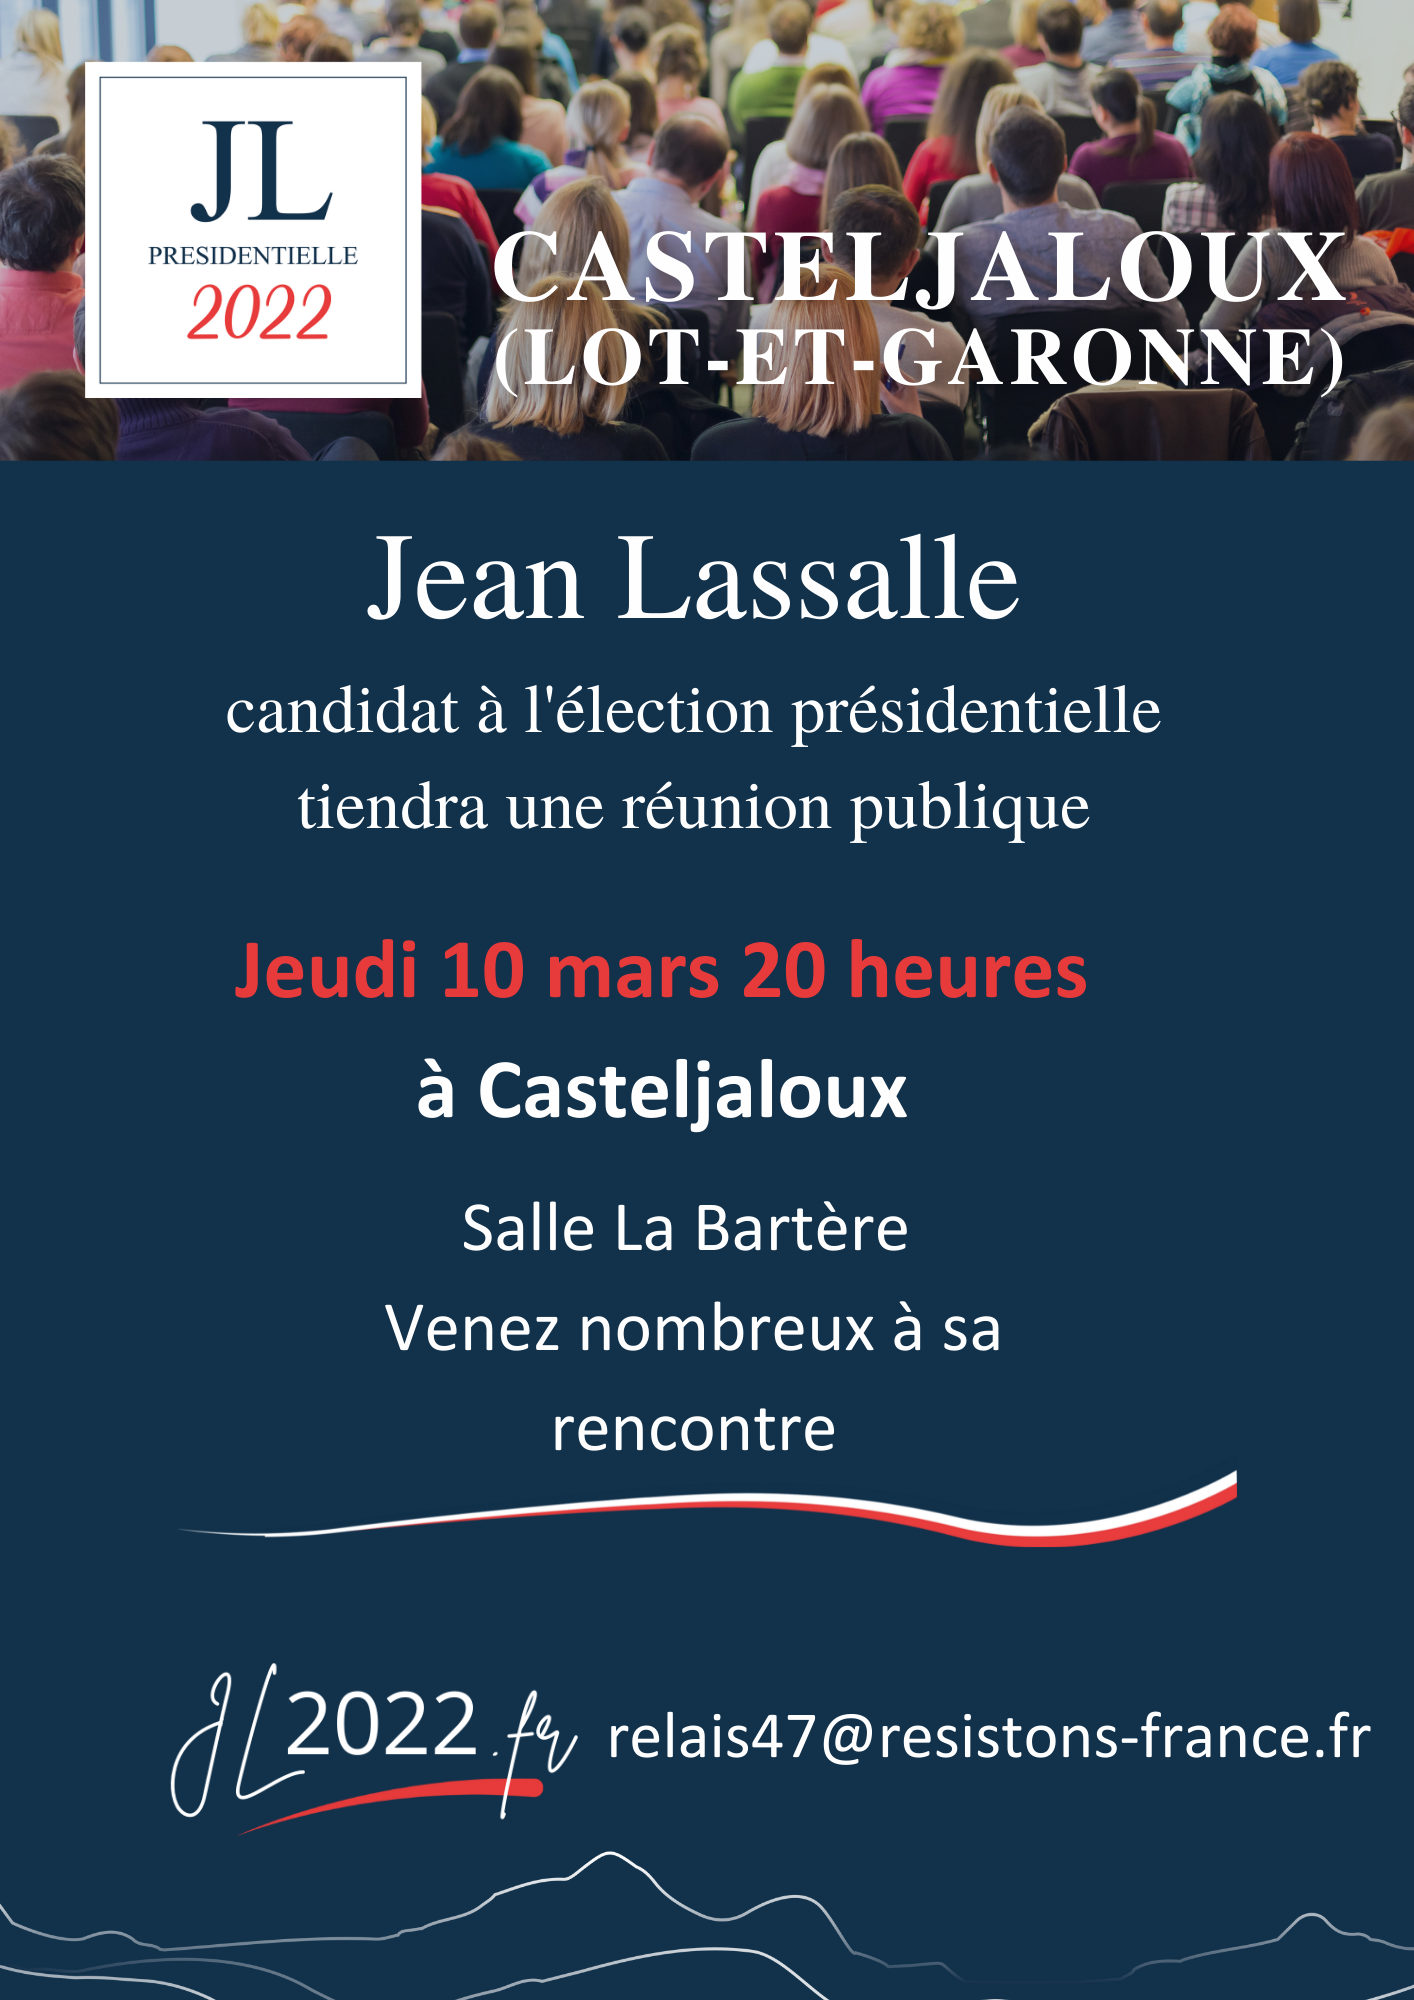 Réunion publique de Jean Lassalle à Casteljaloux (Lot-et-Garonne)